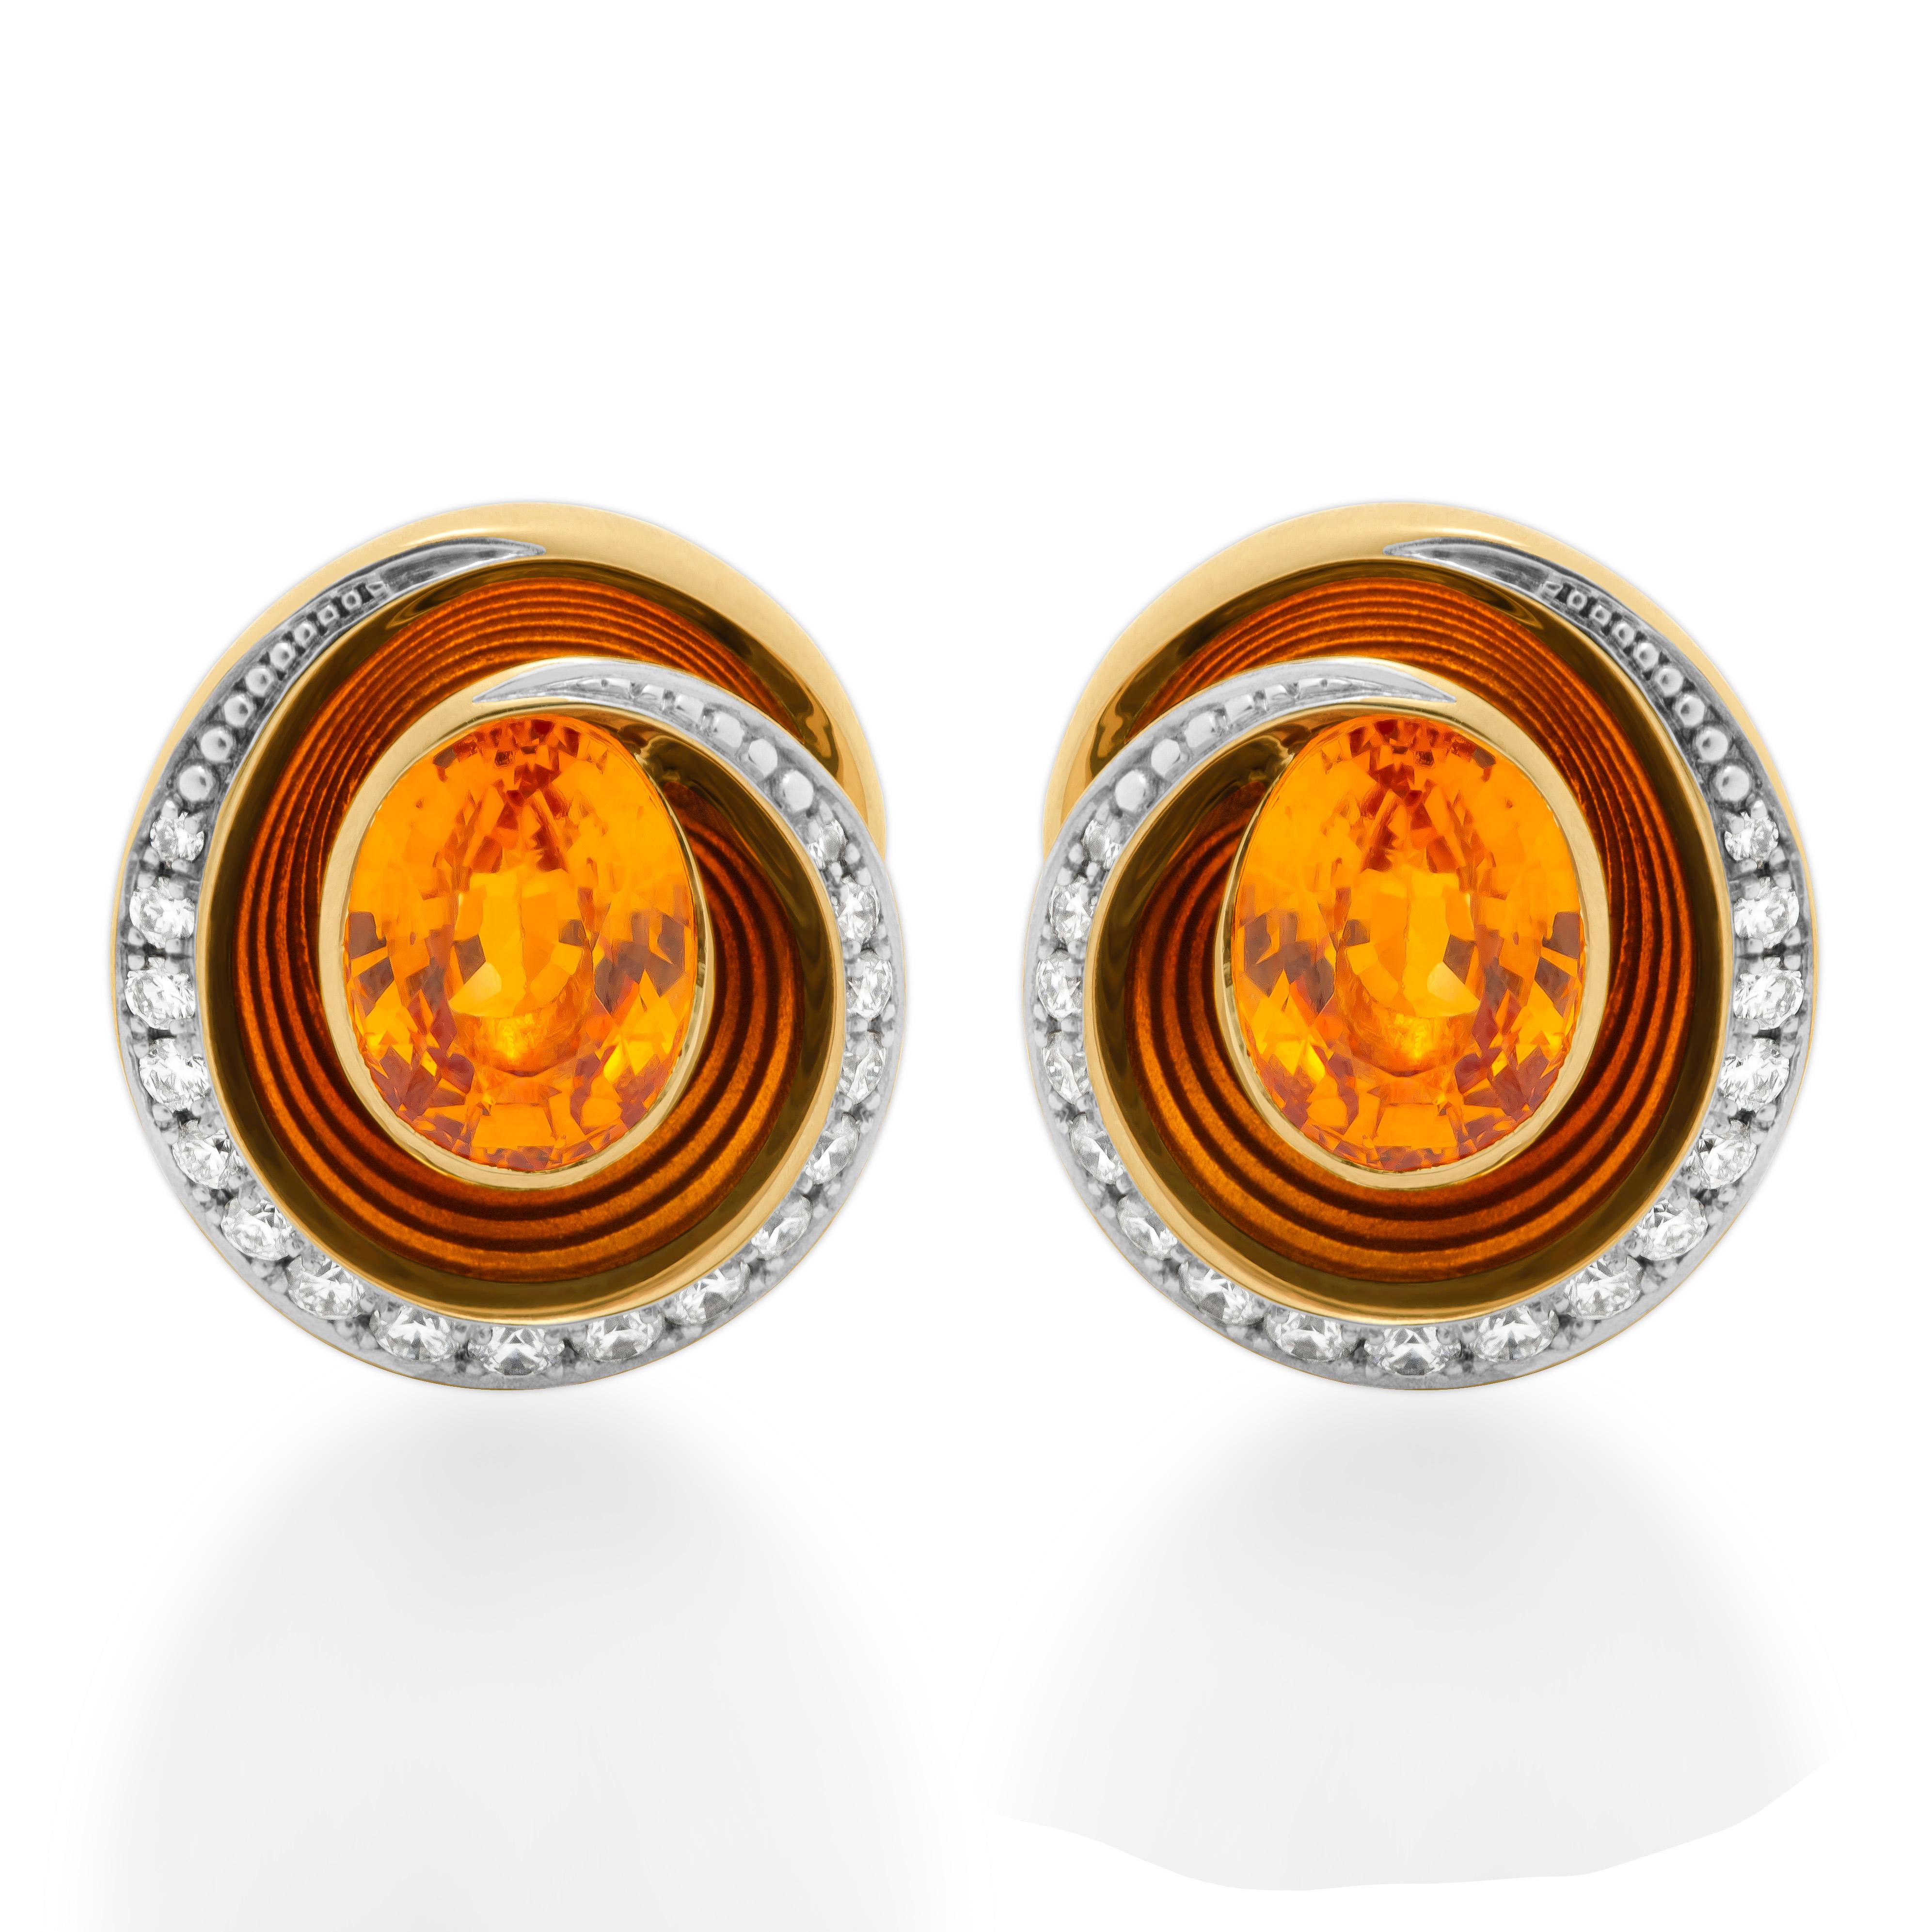 Ohrringe aus 18 Karat Gelbgold mit Spessartin-Diamanten und Emaille in Melt-Farben
Unsere neue Kollektion 